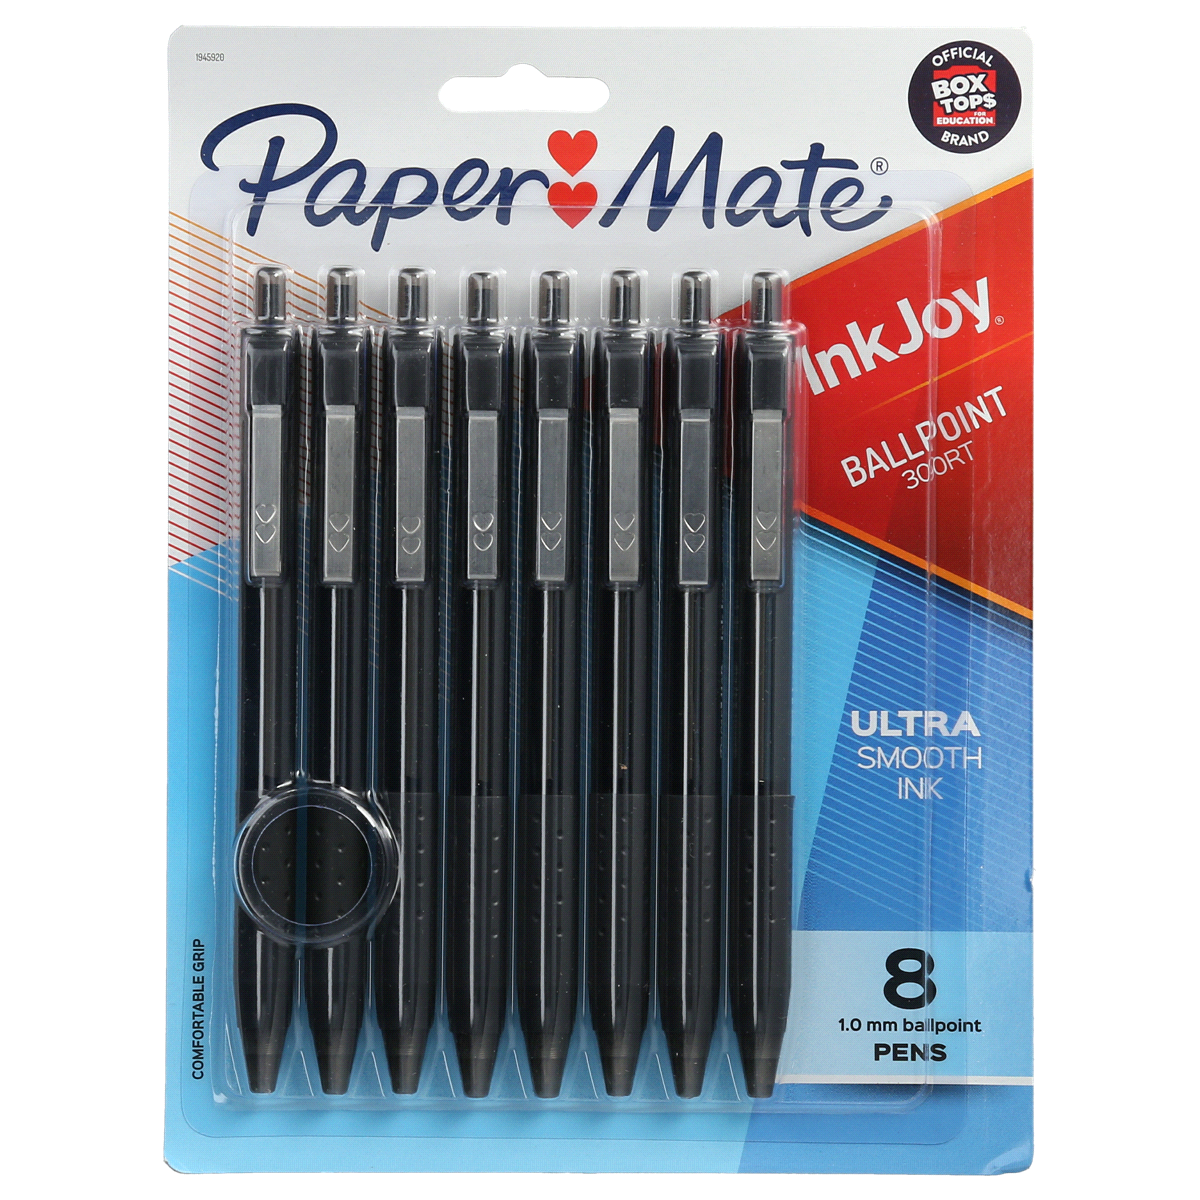 slide 1 of 4, Paper Mate 300RT InkJoy Ballpoint Pens, Medium Point, Black, 8 ct